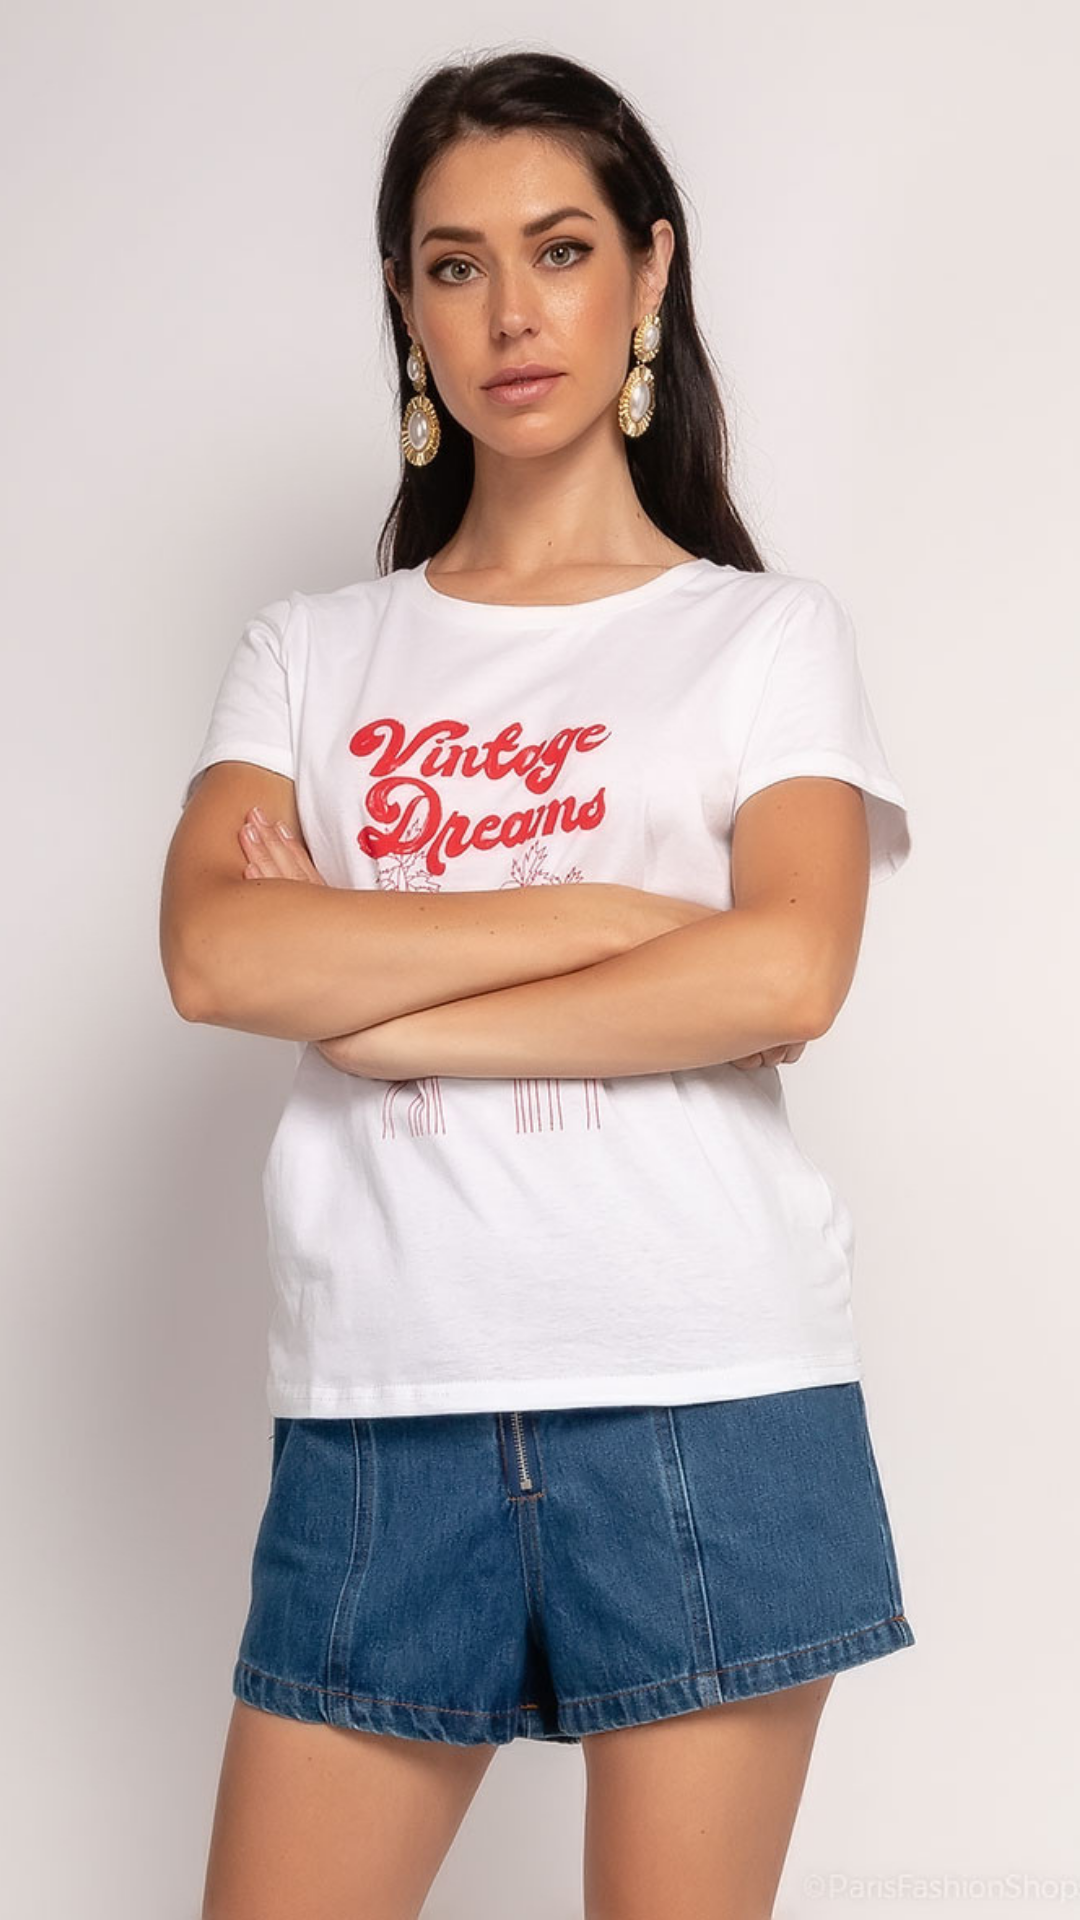 T-shirt wit opschrift vintage dreams - witte t-shirt | Fabrique François 